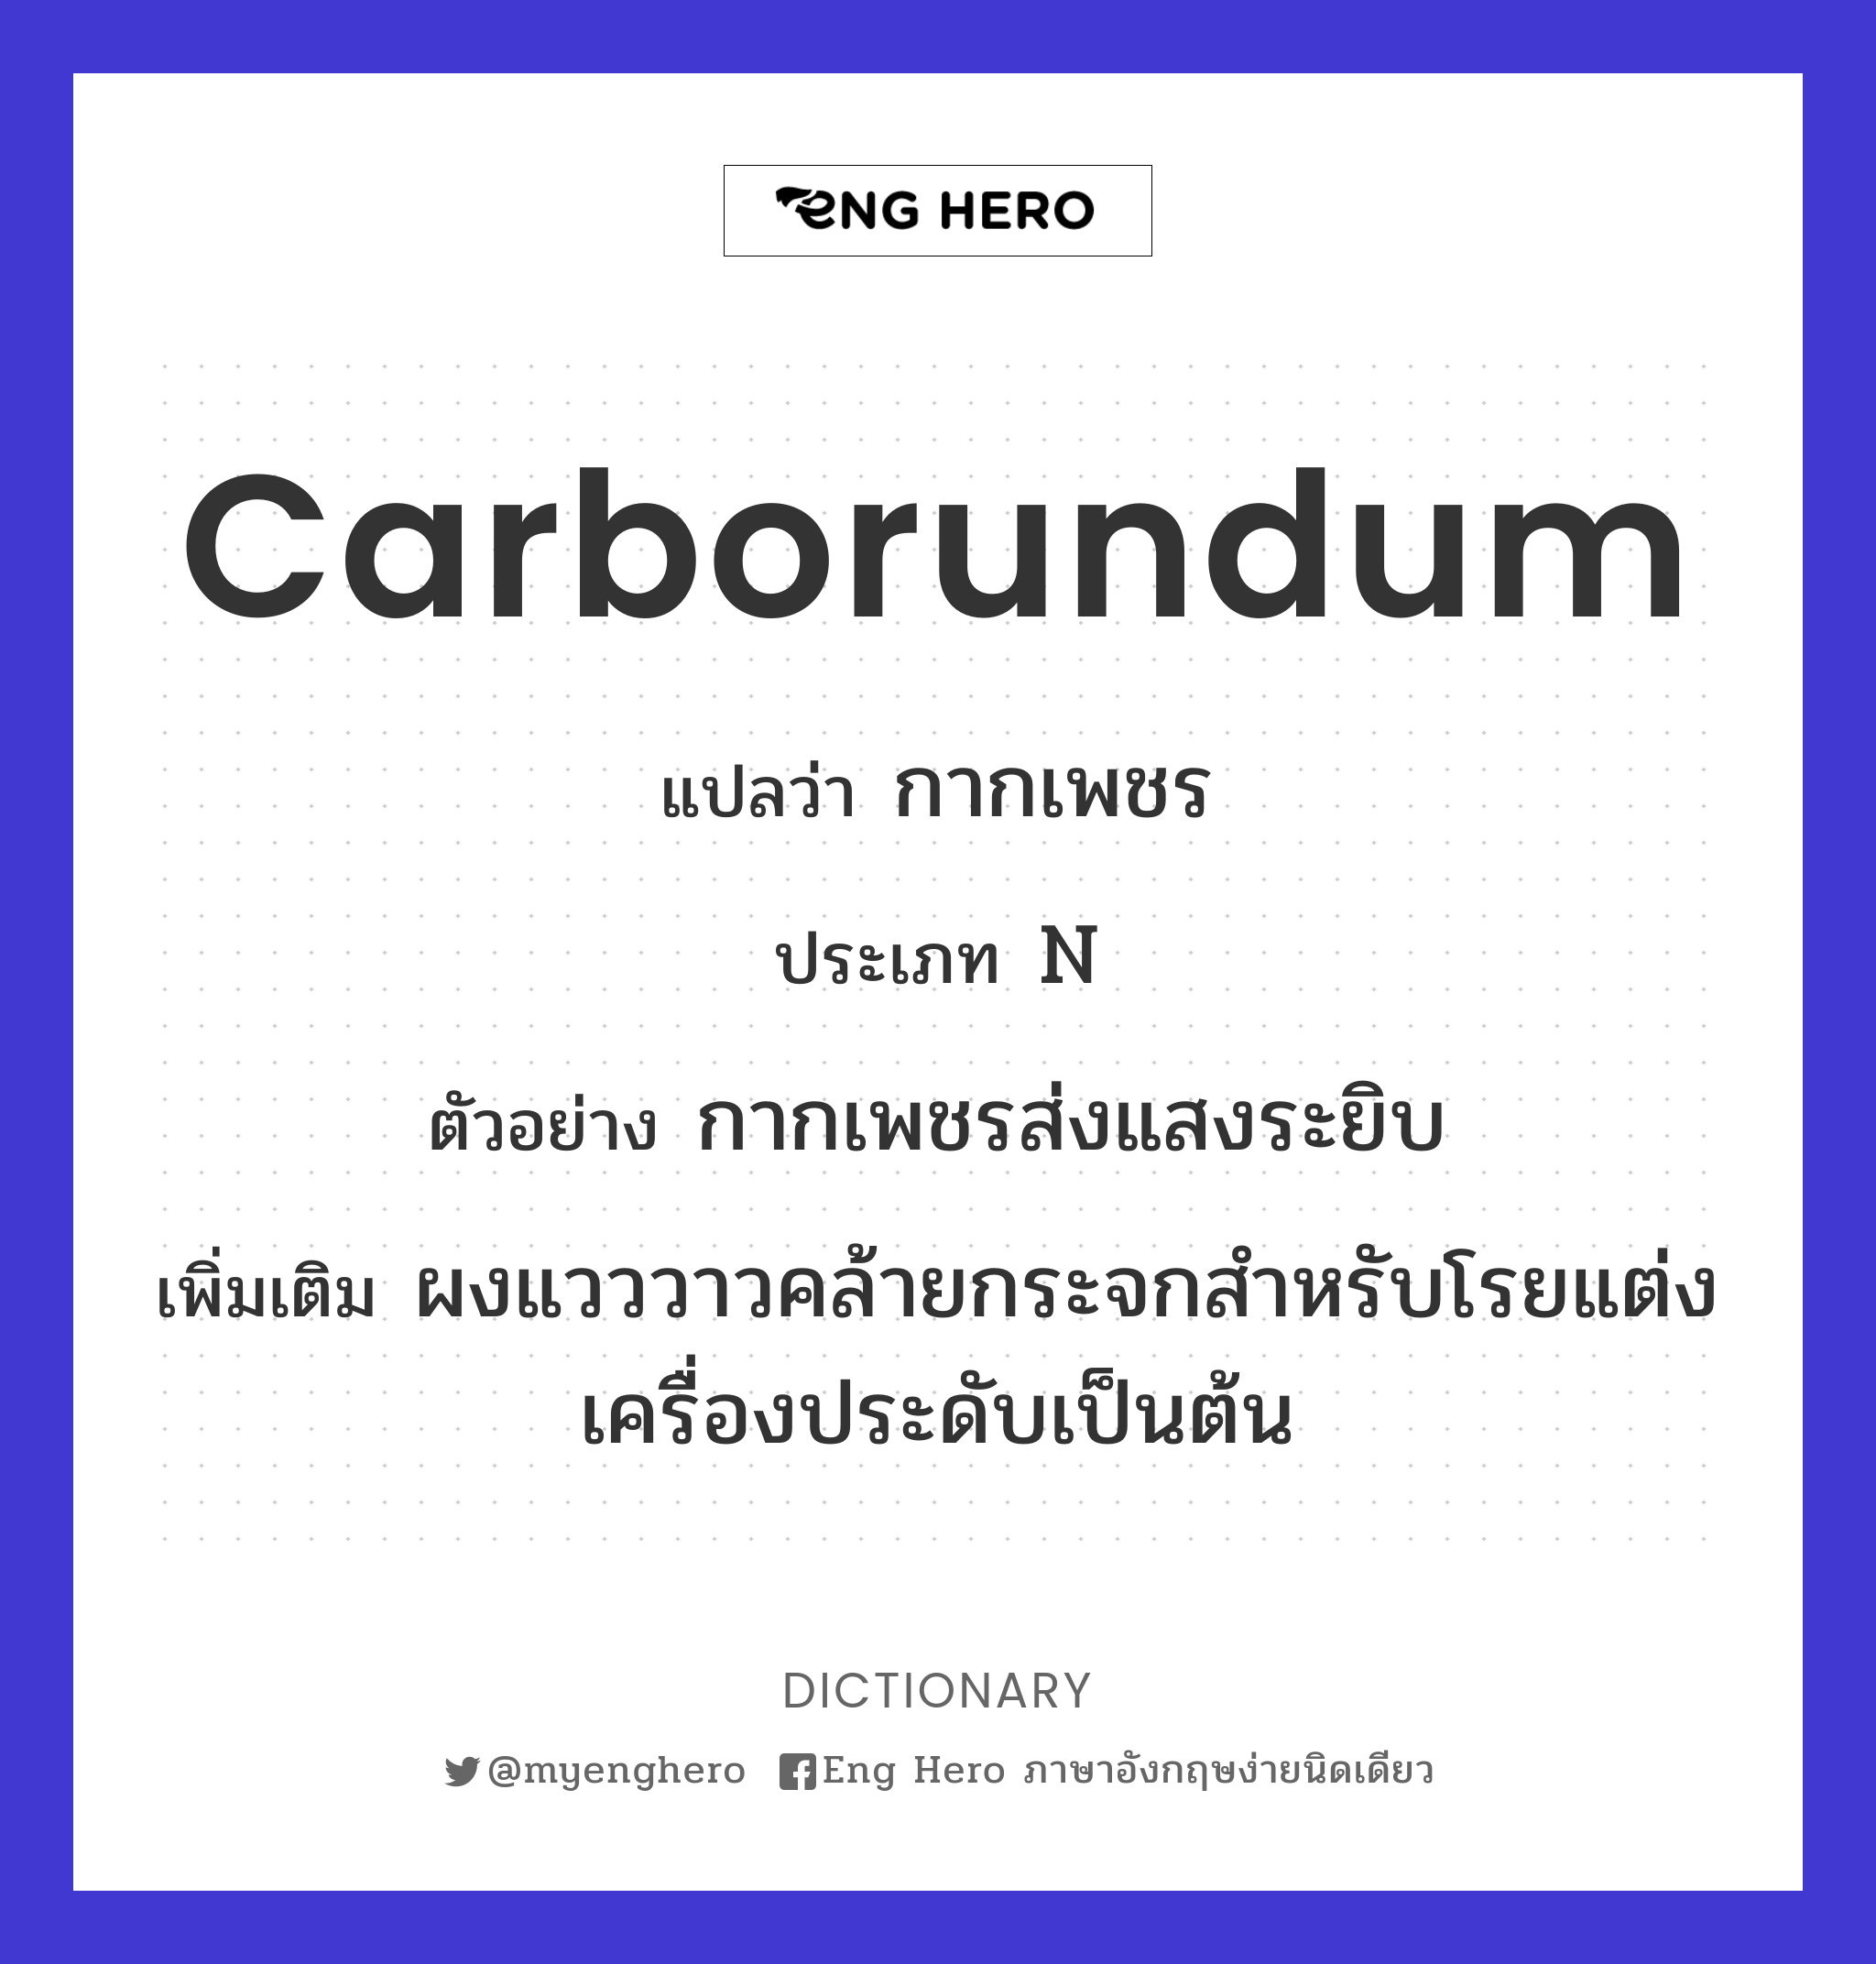 Carborundum